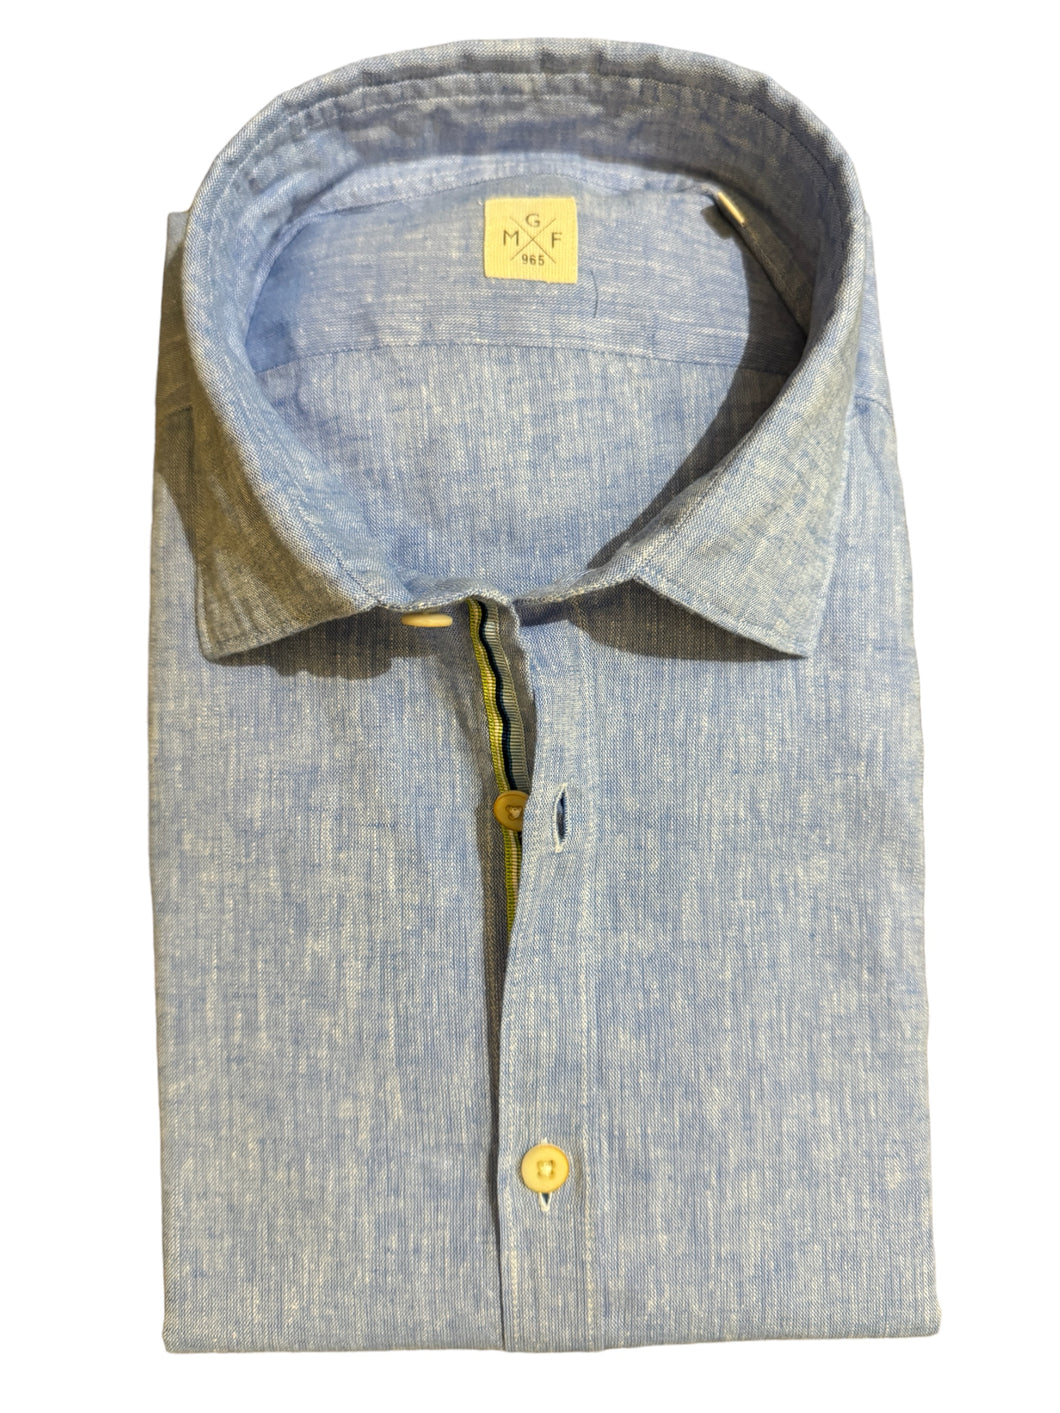 GMF 965 SS Linen/Cotton Shirt Sky Blue